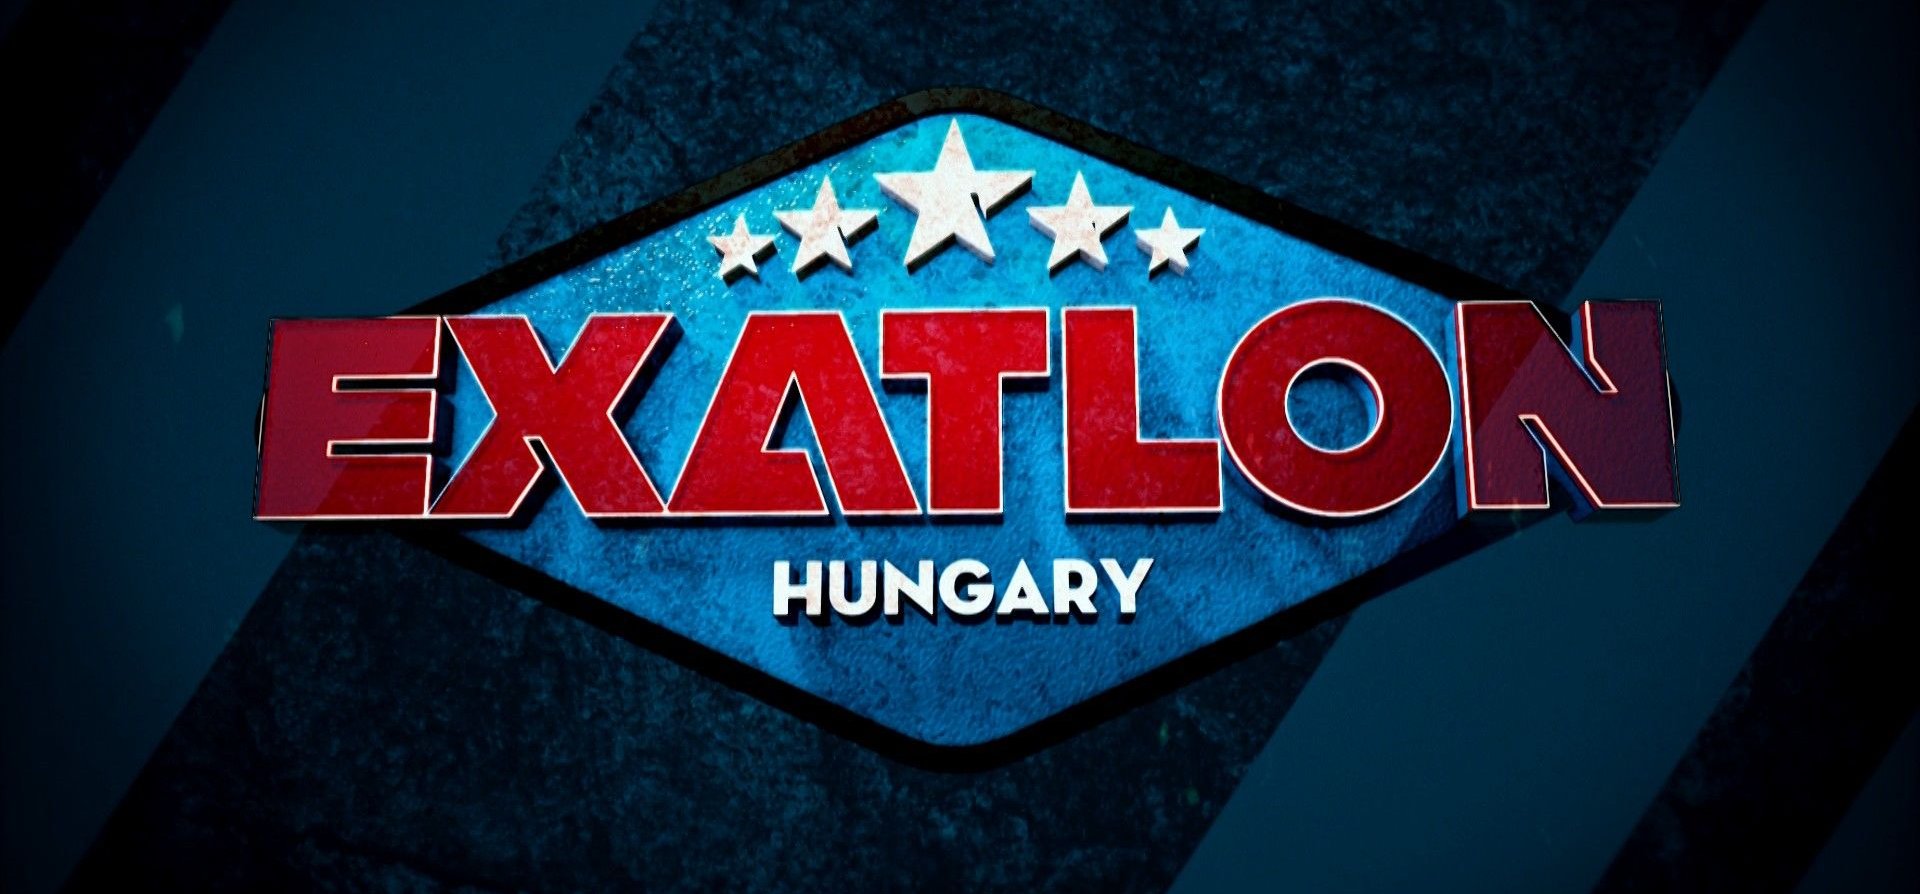 Műsorváltozás lesz a TV2-n, ami az Exatlon Hungary-t is érinti